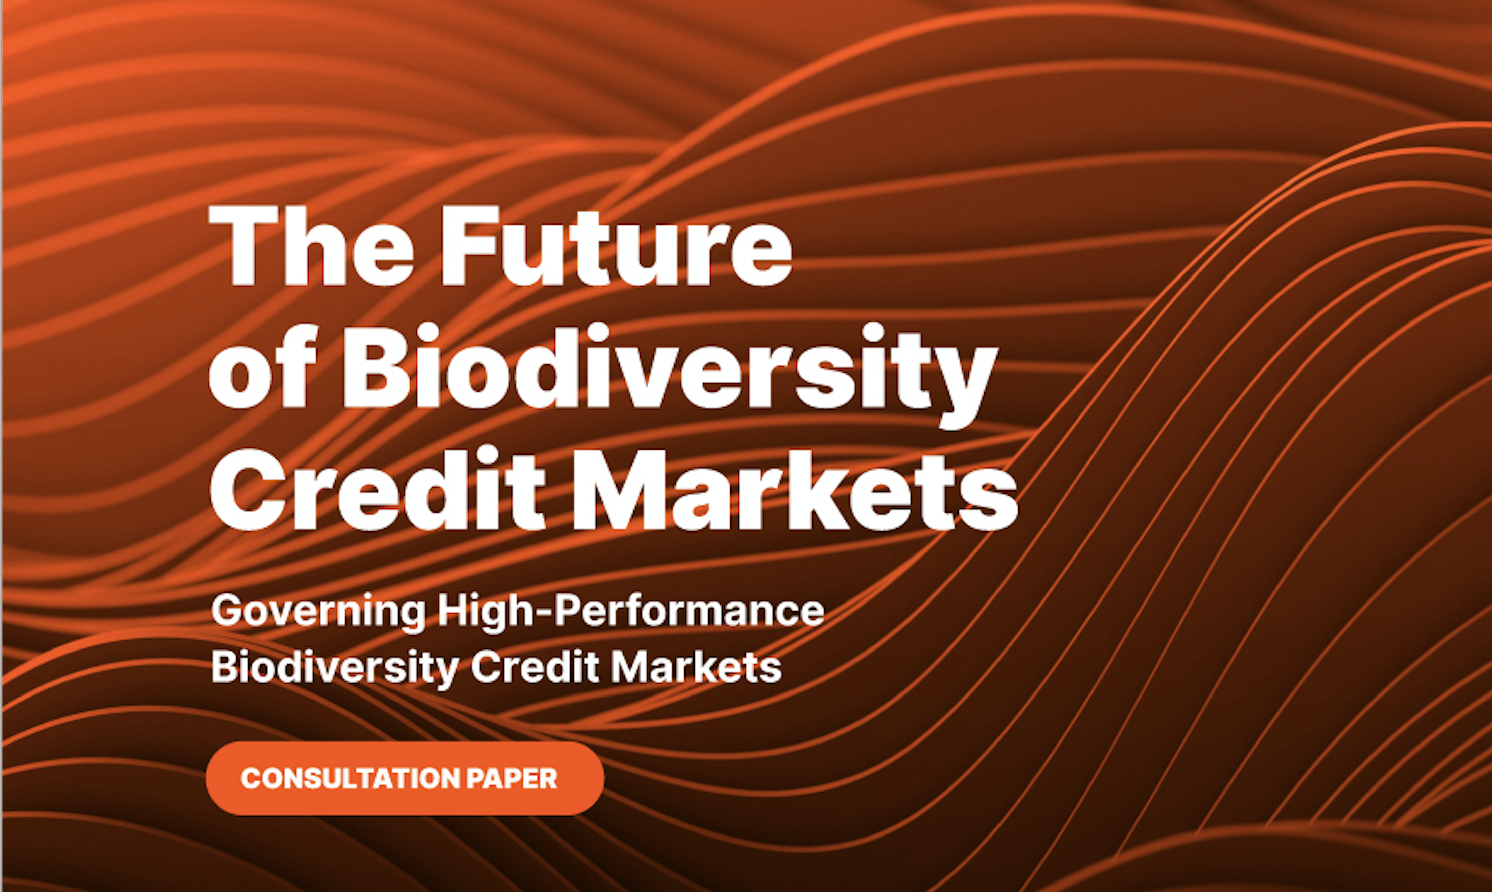 ПРЕДЛОЖЕНИЕ: Консультационный документ по рынкам кредитования сохранения биоразнообразия